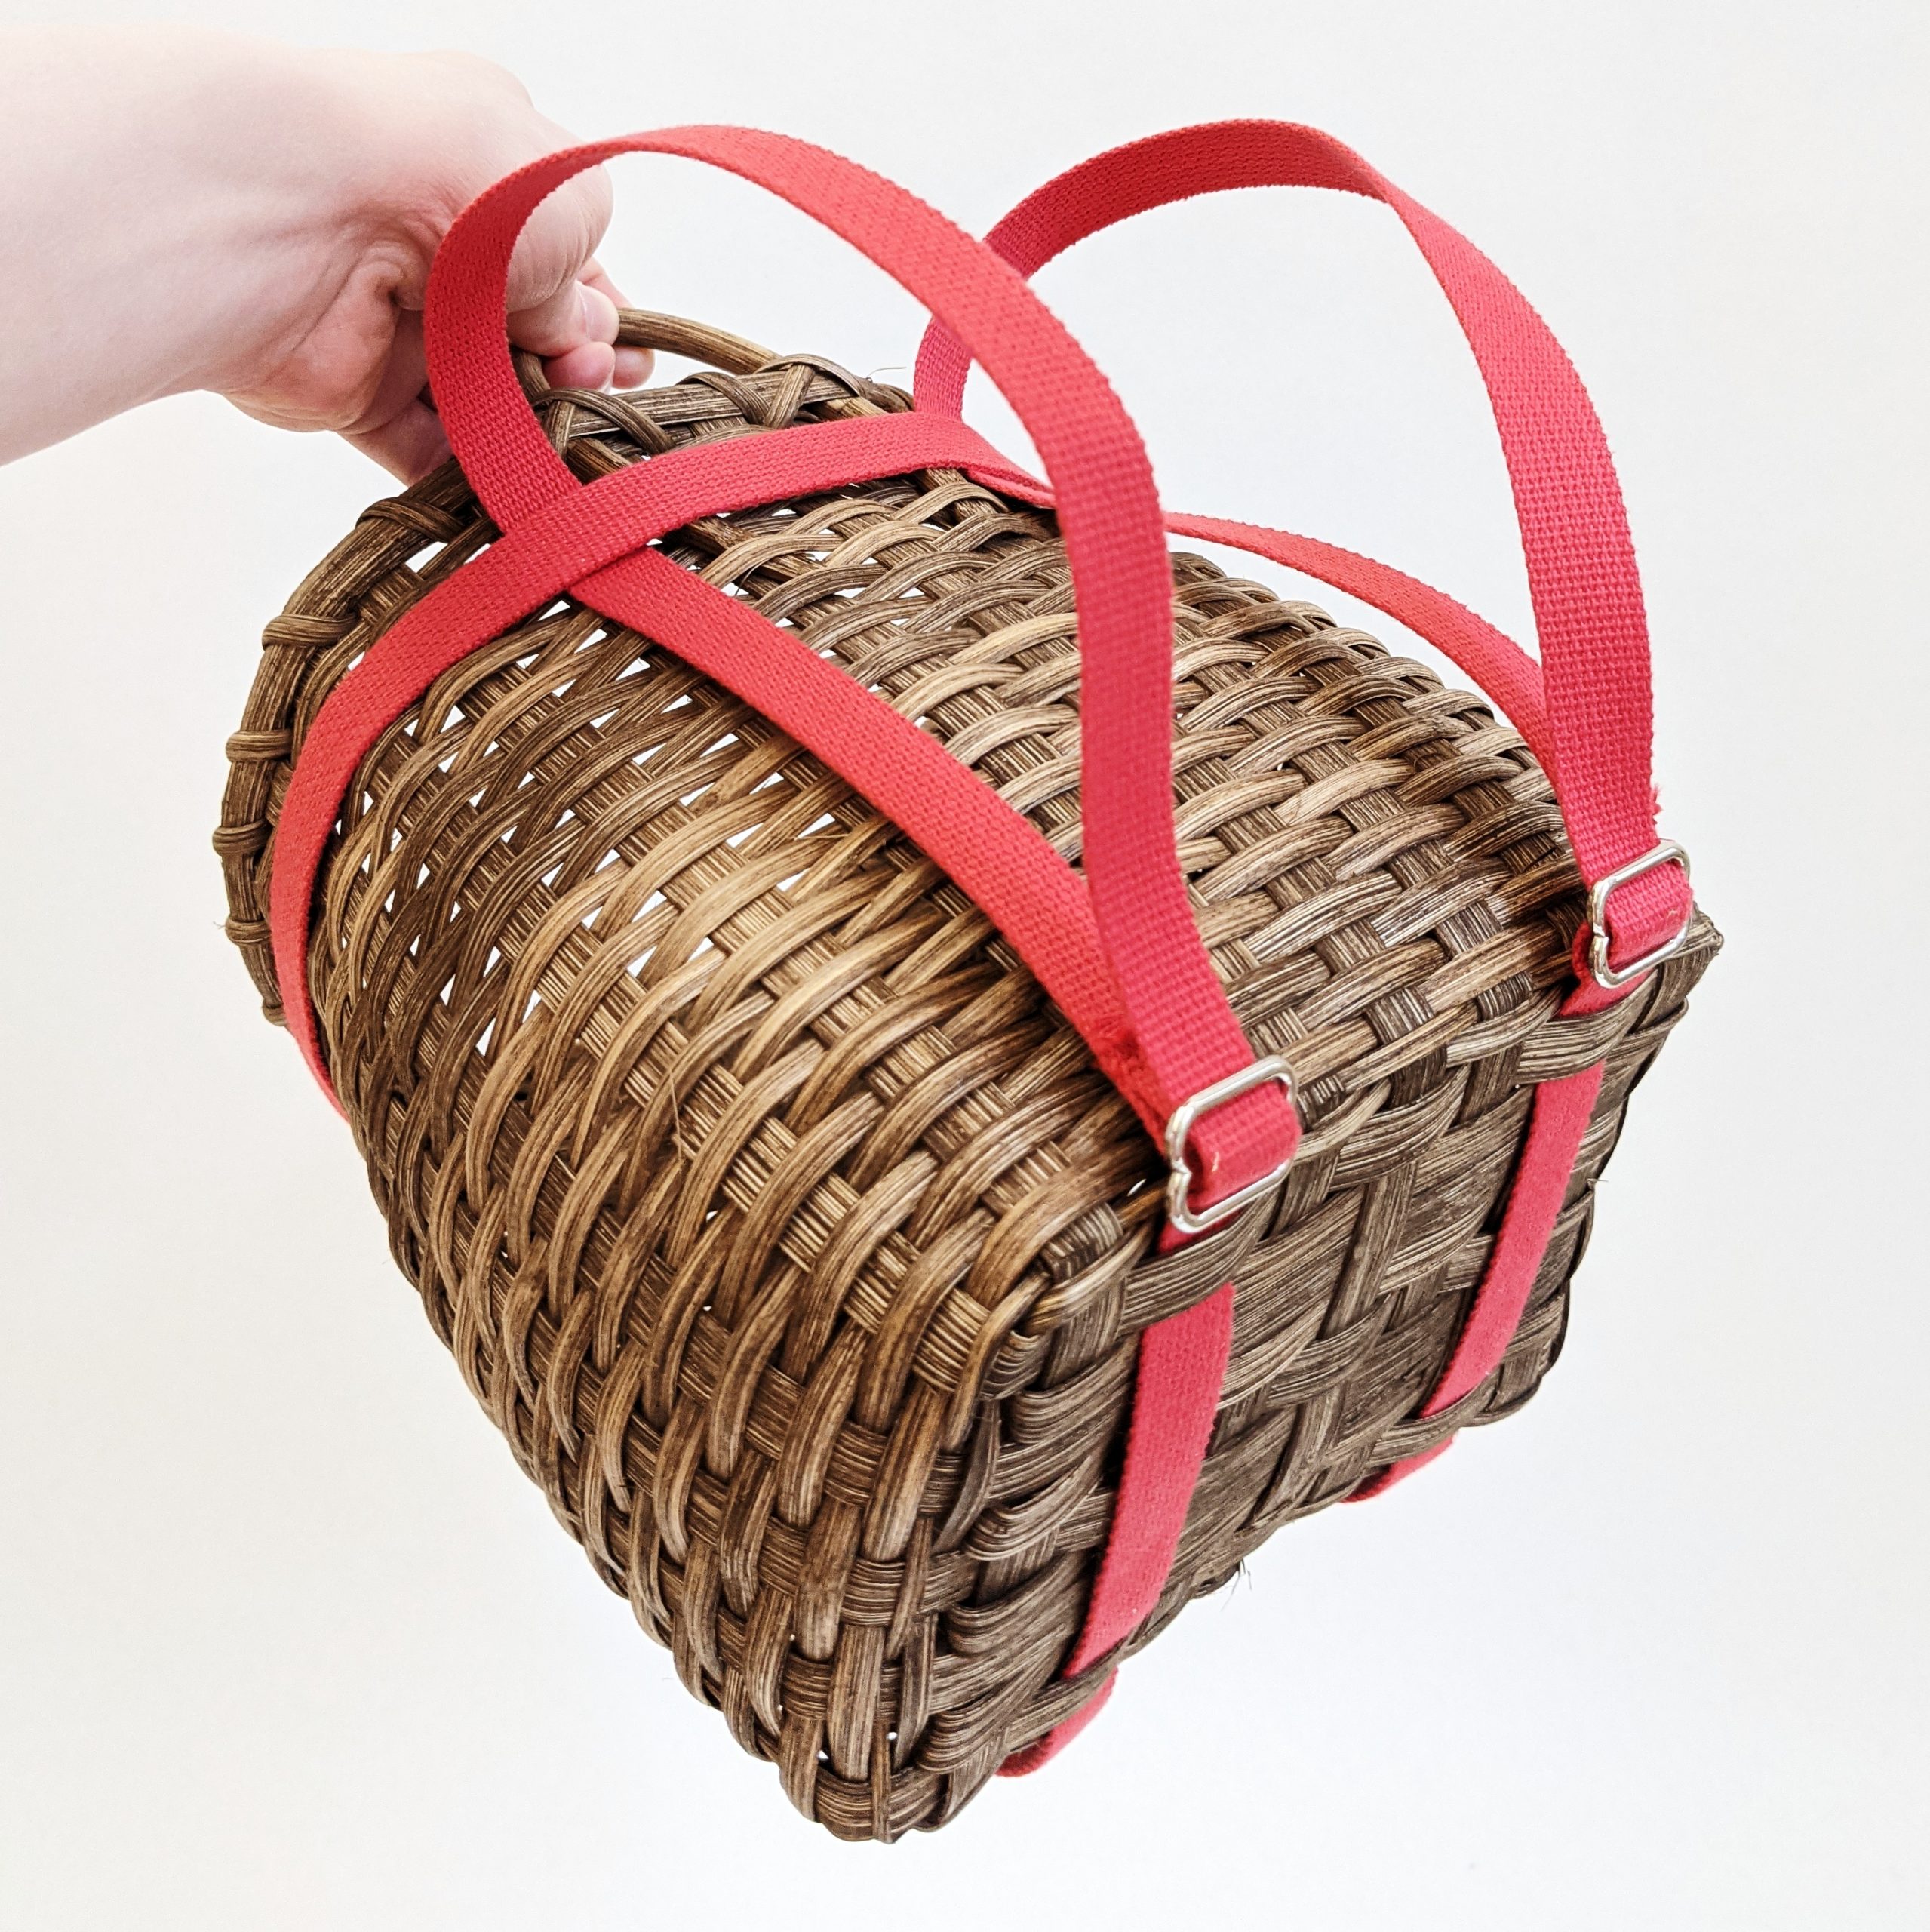 Ochine 2 Pack Wicker Baskets, Wicker Storage Baskets, Woven